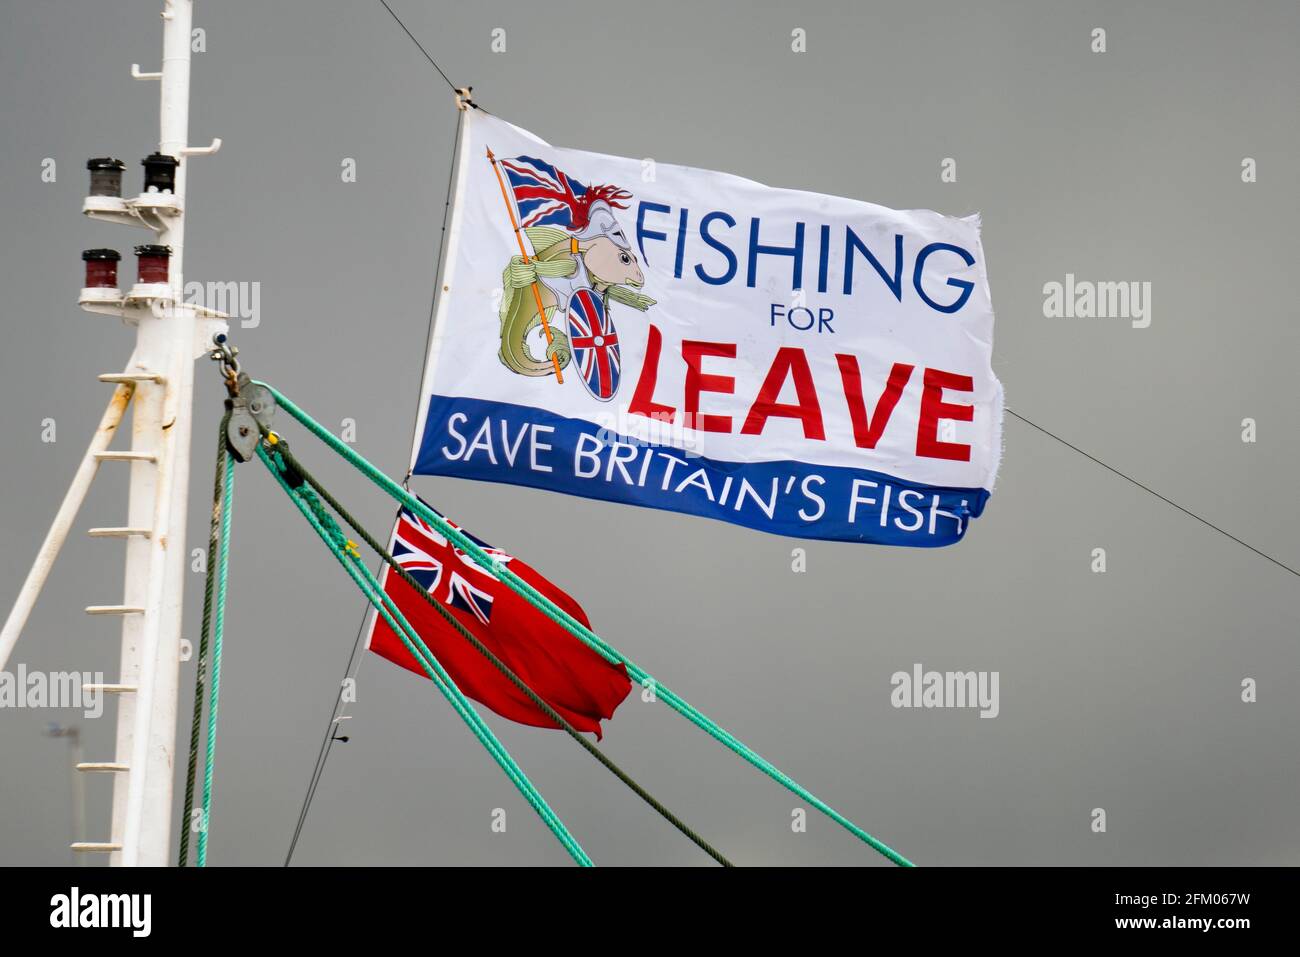 Angeln nach Leave Flag fliegen auf einem Fischerboot in Troon, Schottland. Ziel der Gruppe ist es, die Kontrolle über die britischen Fischereigewässer und die Fischereipolitik wiederherzustellen Stockfoto